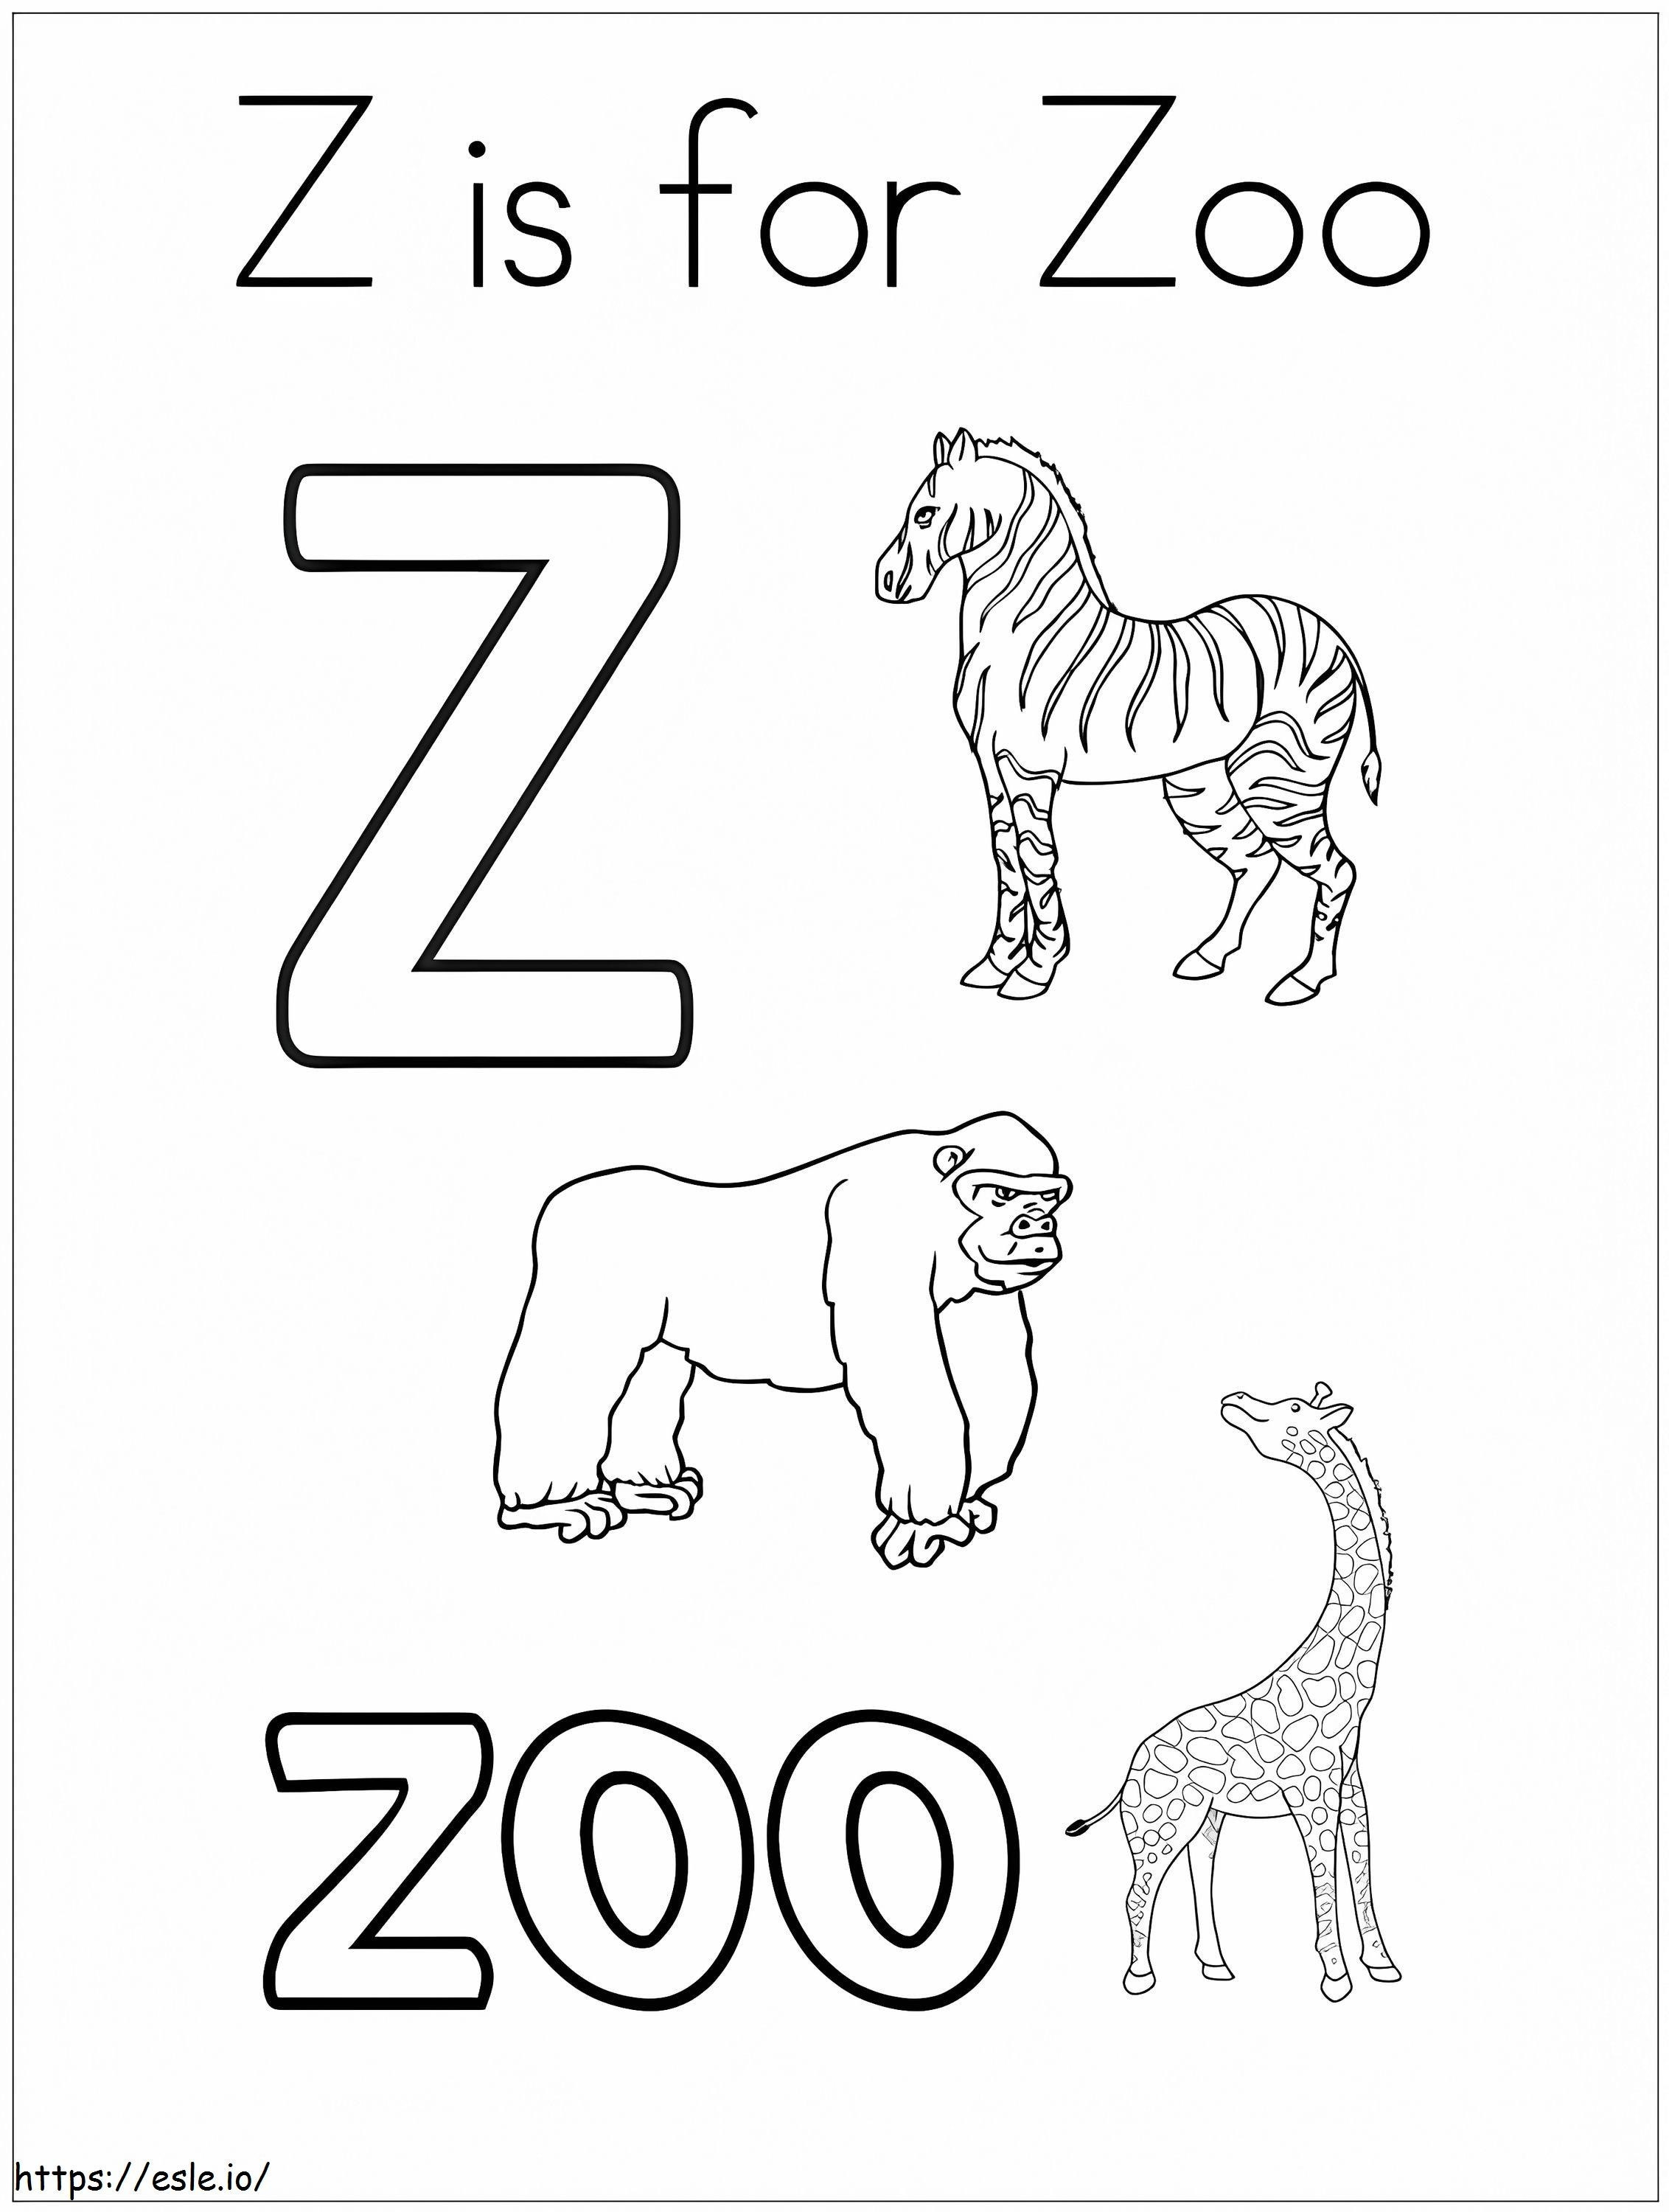 Coloriage Zoo Lettre Z 1 à imprimer dessin